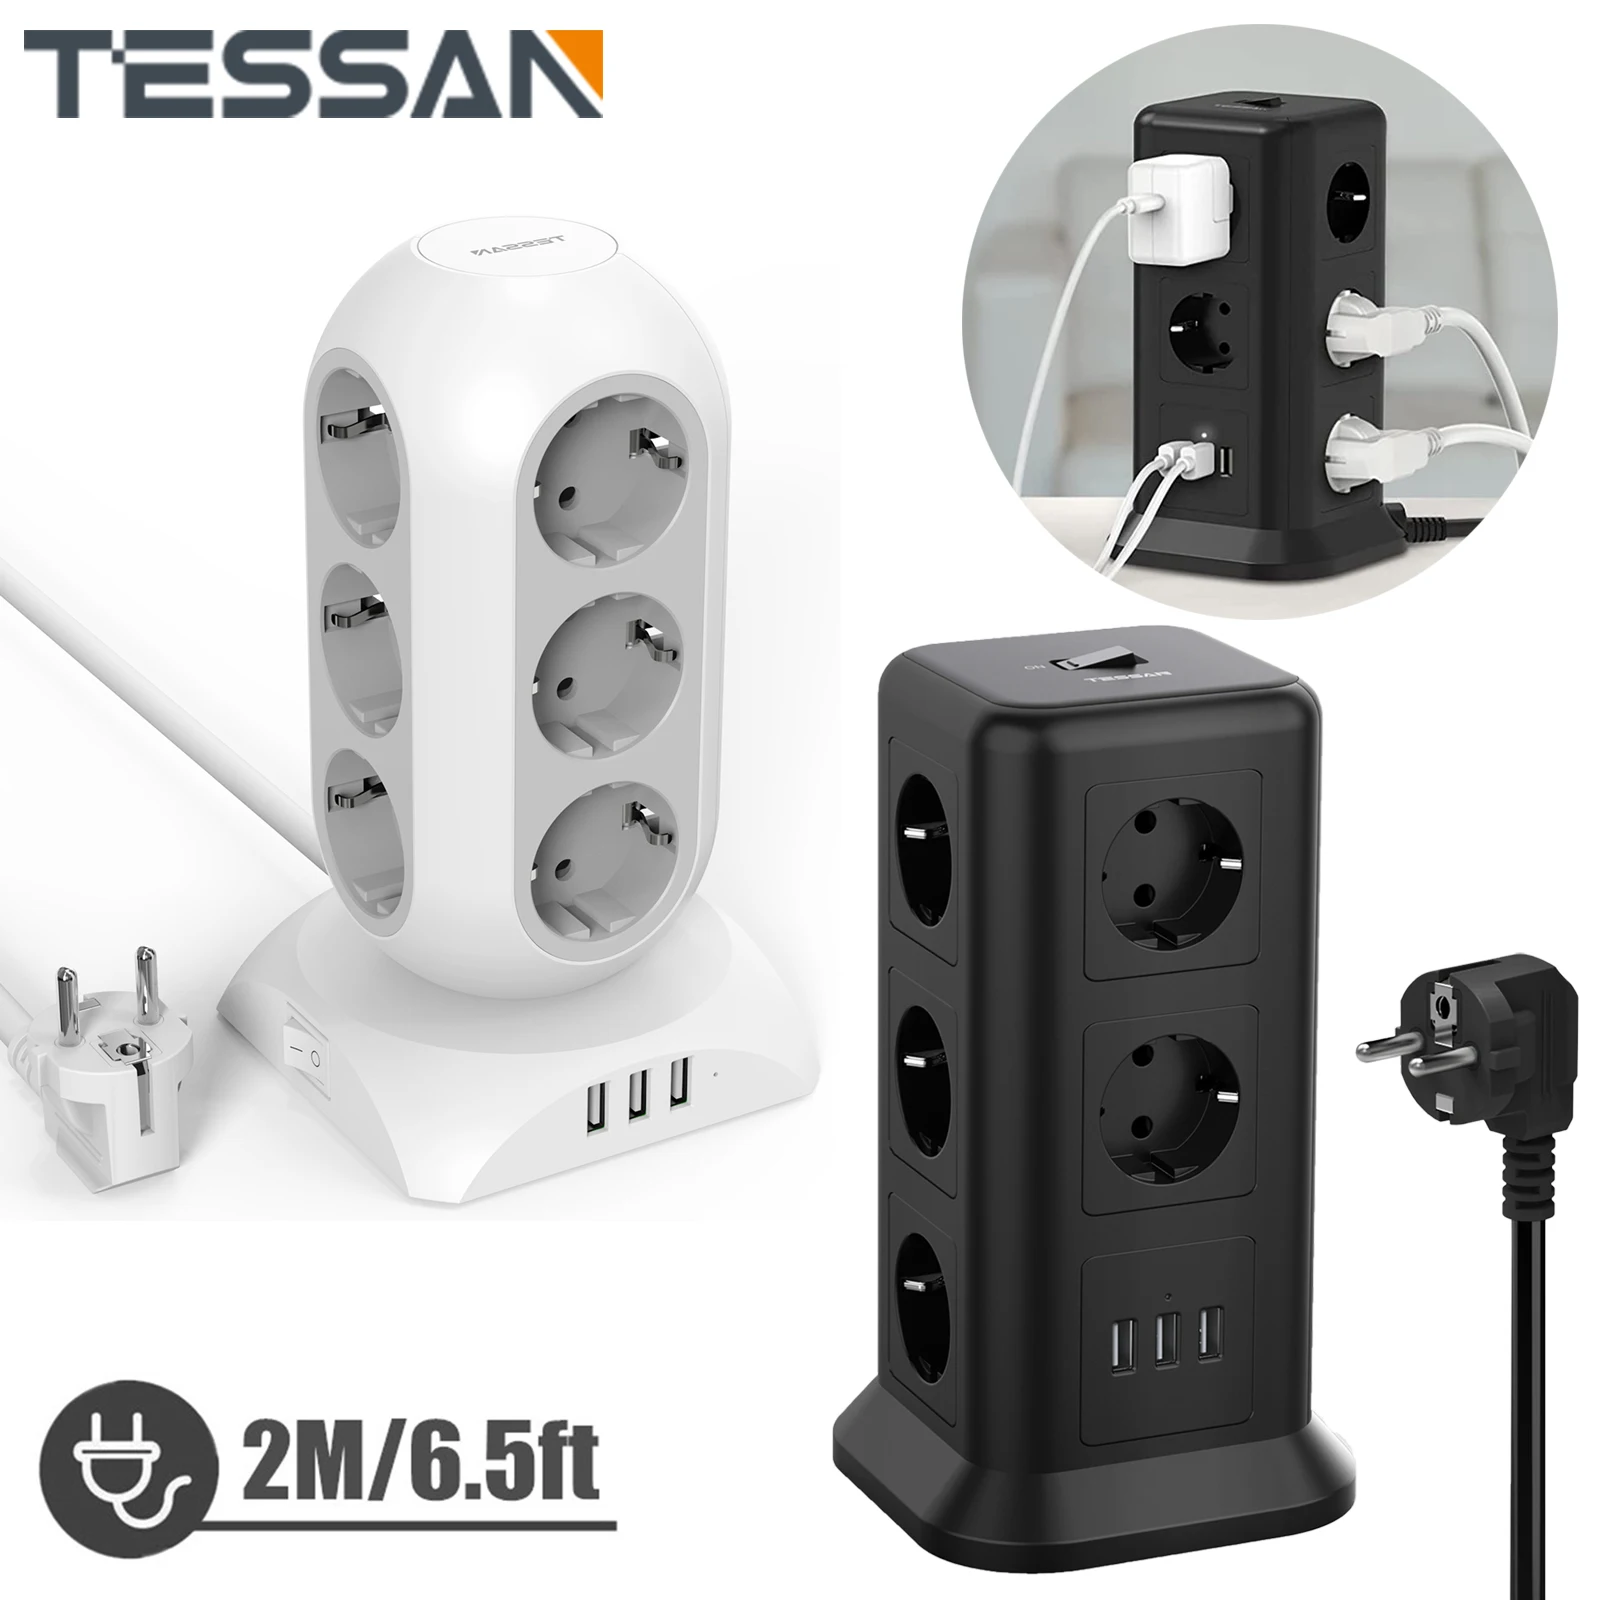 

Удлинитель TESSAN с европейской вилкой, 11/12 розеток переменного тока и 3 USB-портами, многофункциональная розетка с кабелем 1,5 м/2 м